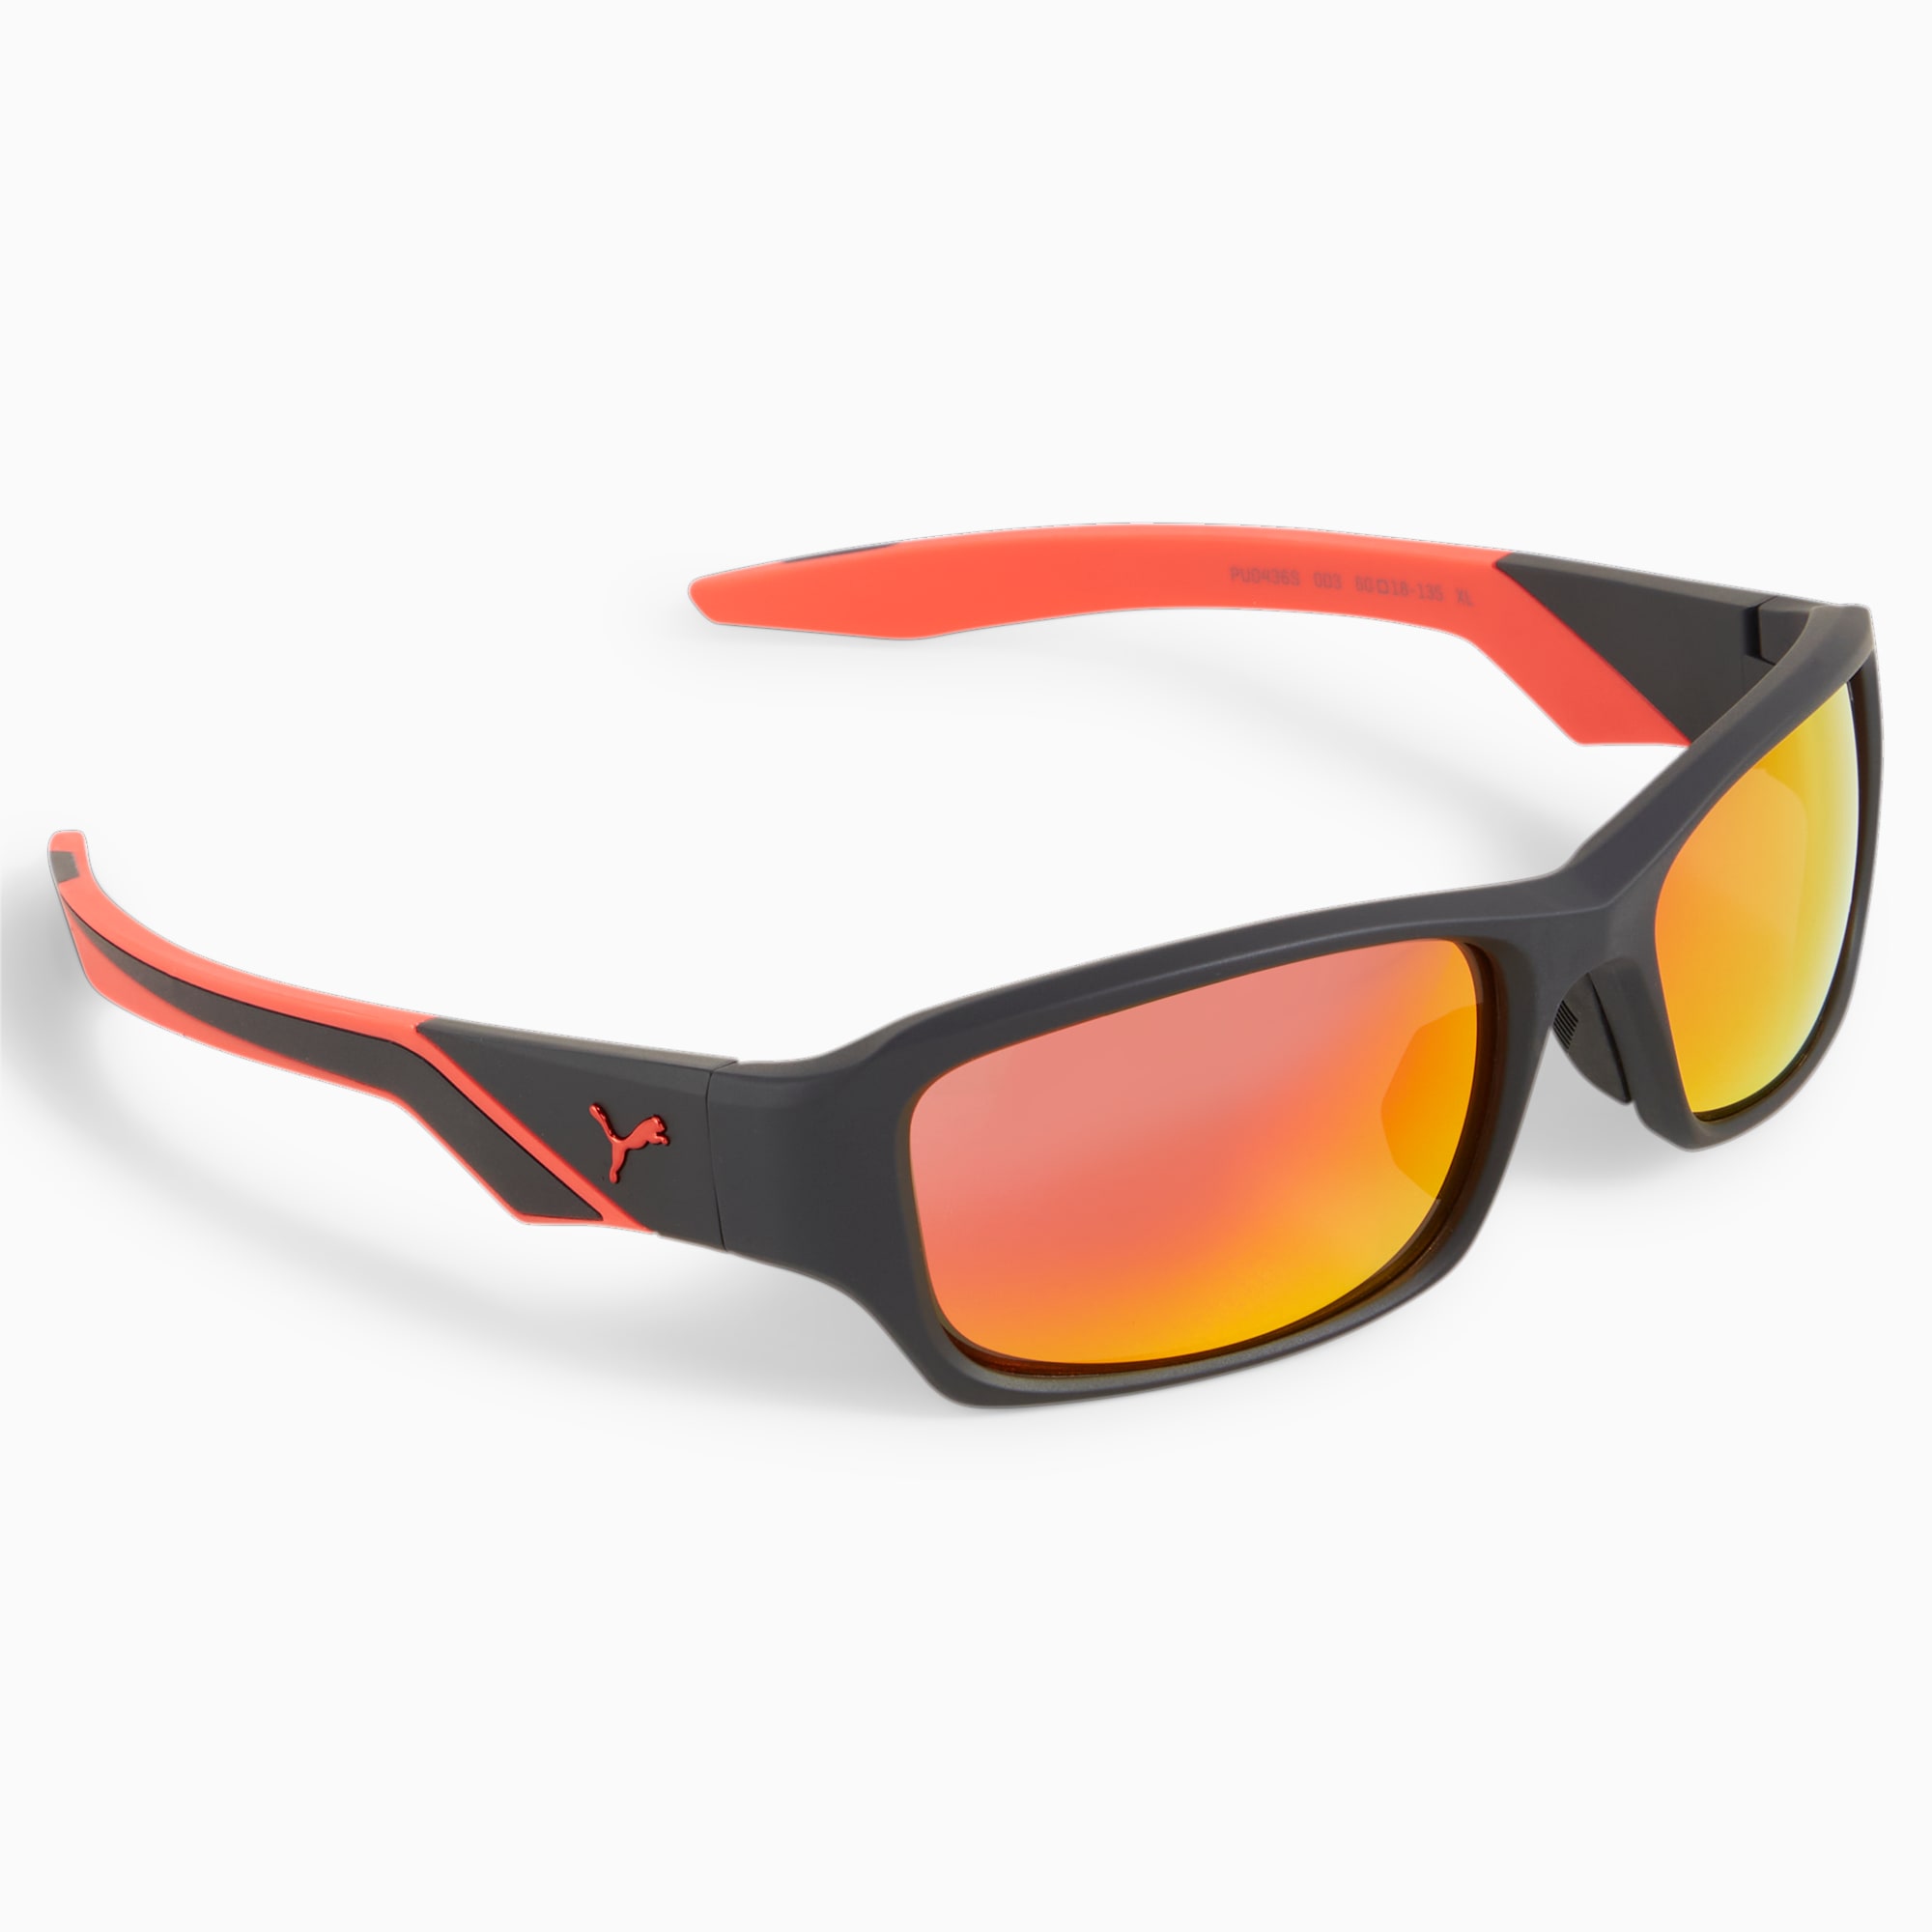 PUMA Sportliche Lifestyle-Sonnenbrille, Schwarz/Rot